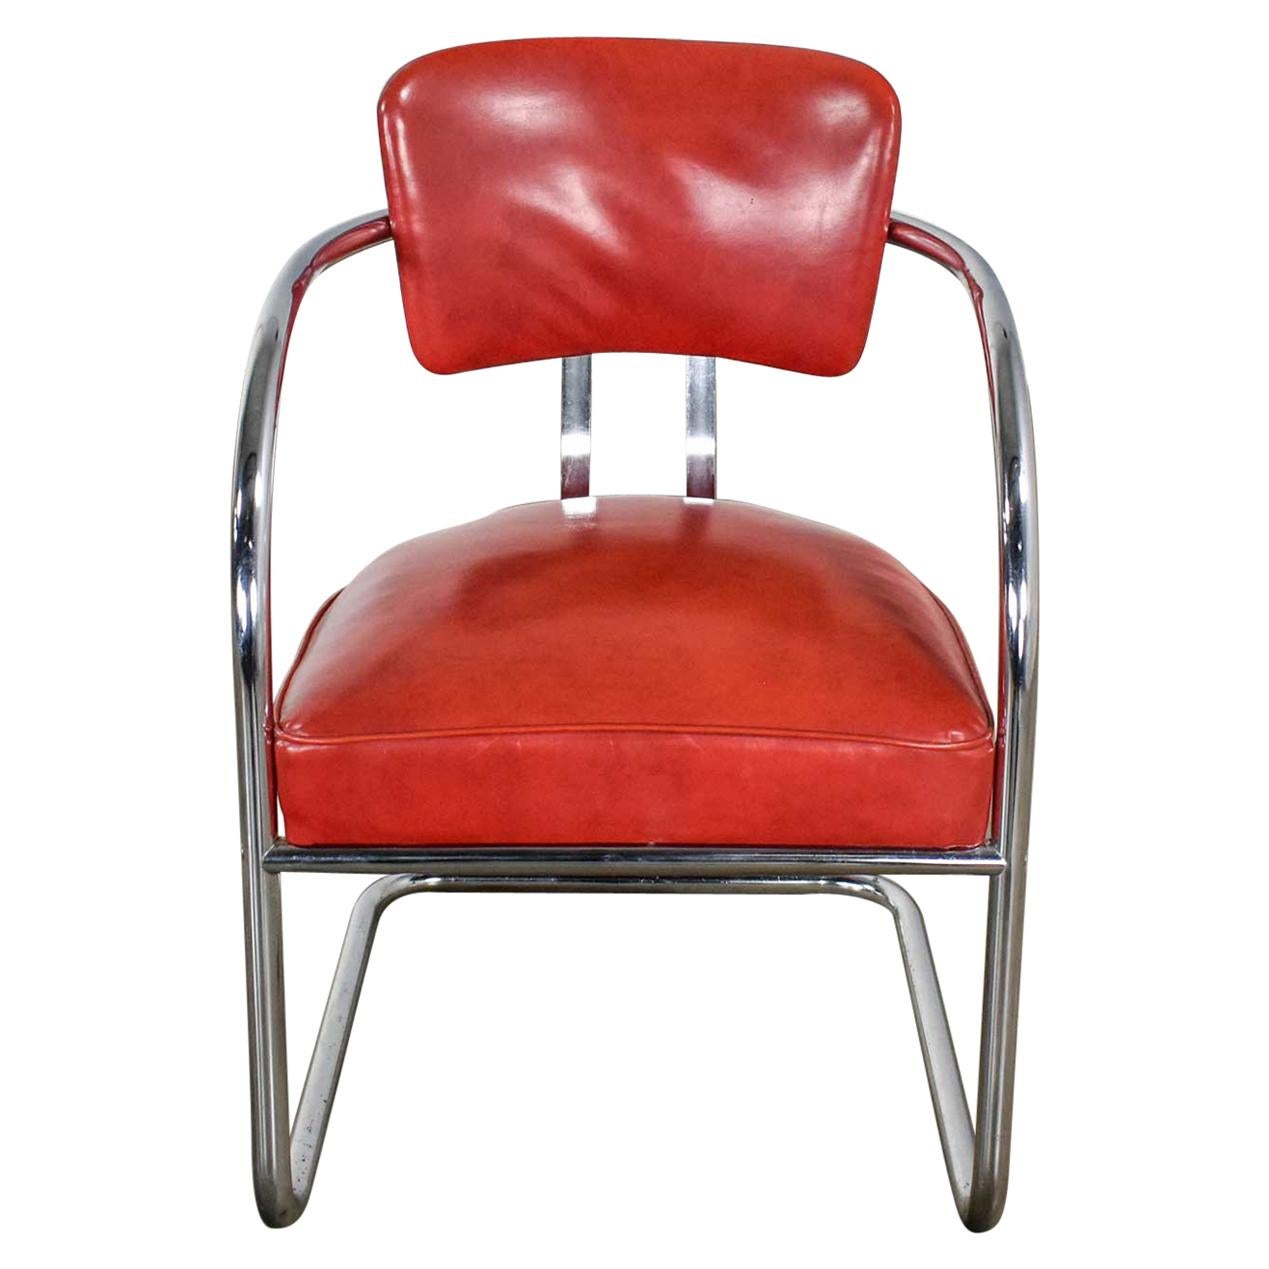 Streamline Art Deco Cantilever Chair Chrome & Red Vinyl Attr Kem Webber-Lloyds For Sale